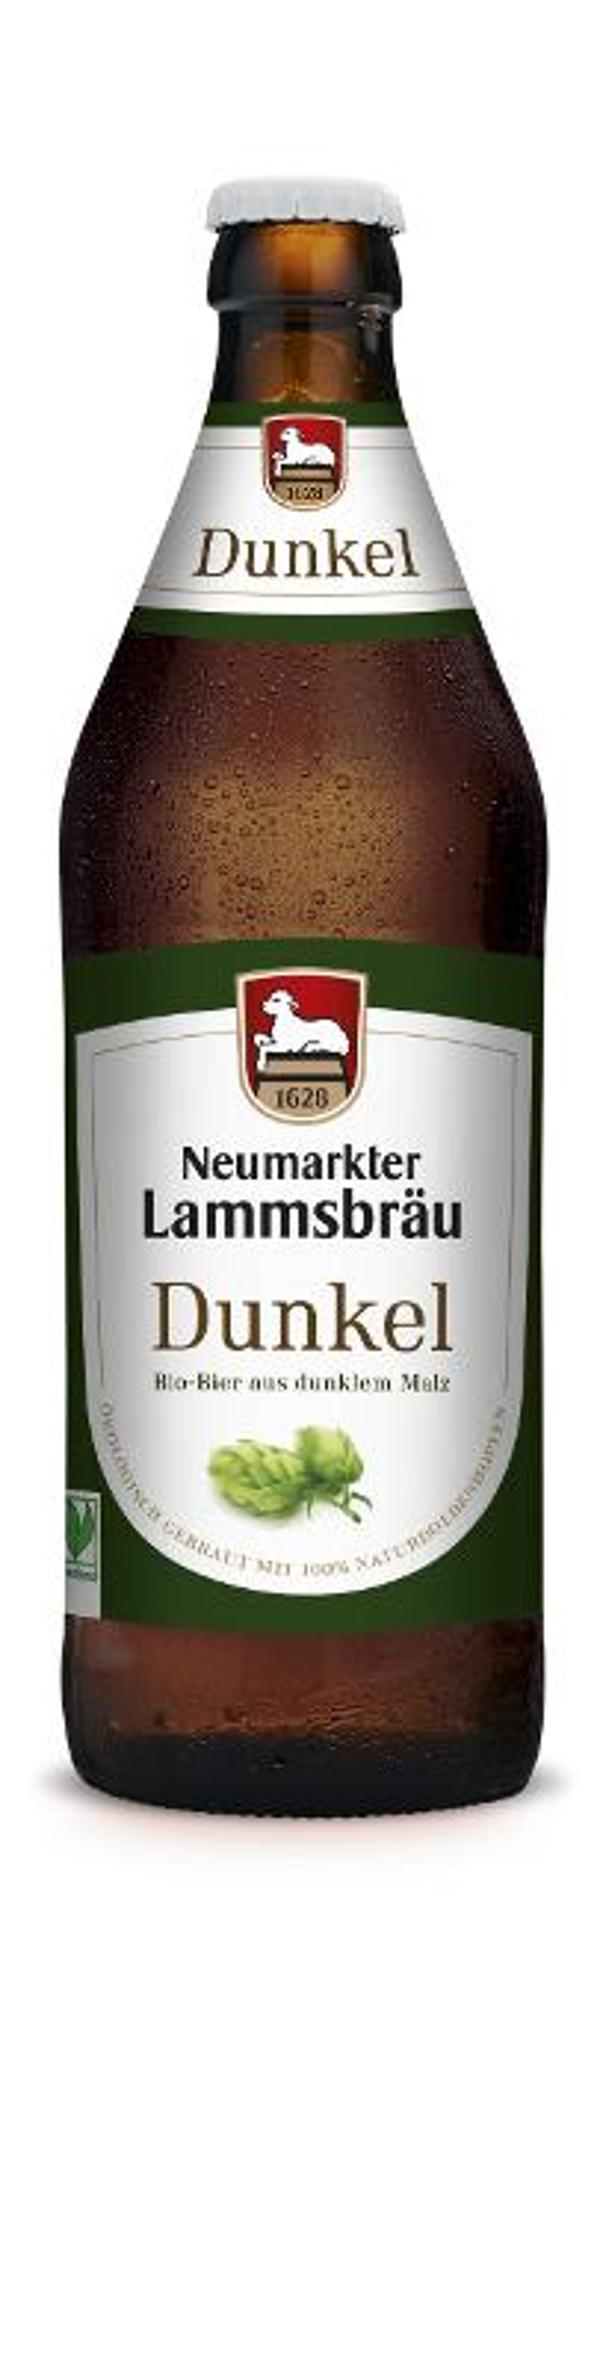 Produktfoto zu VPE Bier Lammsbräu Dunkel 10x0,5 l Neumarkter Lammsbräu